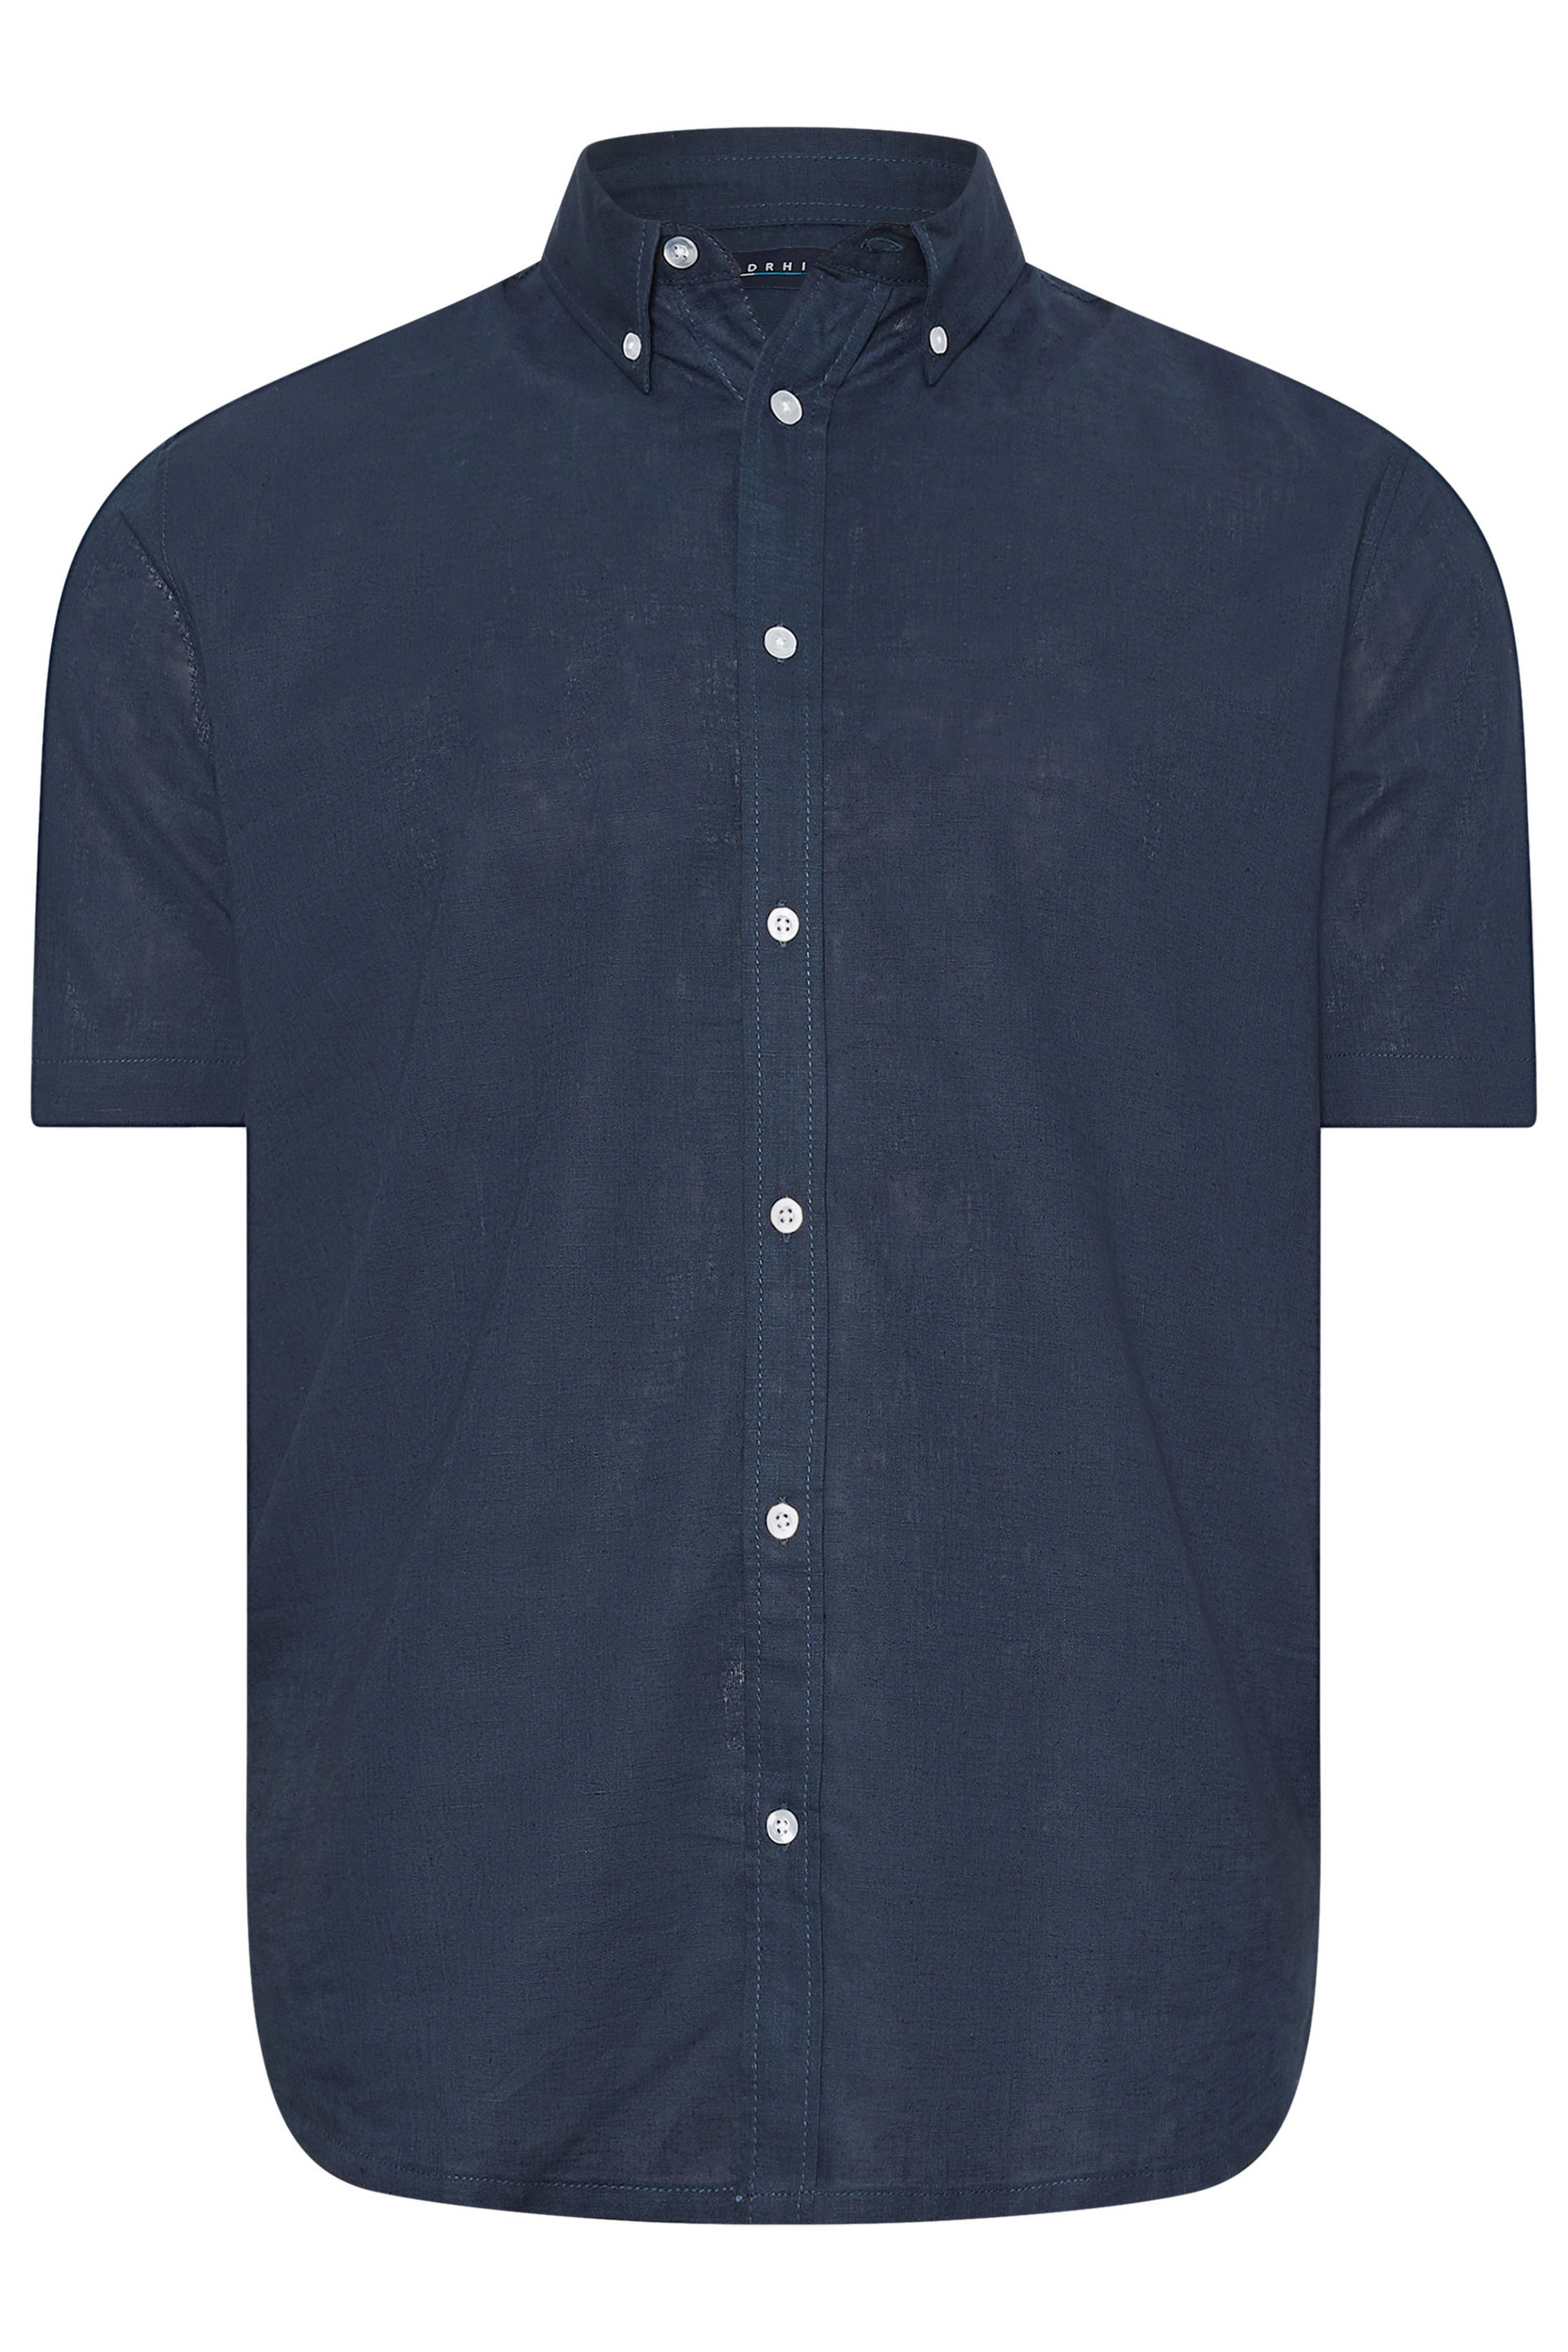 BadRhino Navy Blue Short Sleeve Linen Shirt | BadRhino 1